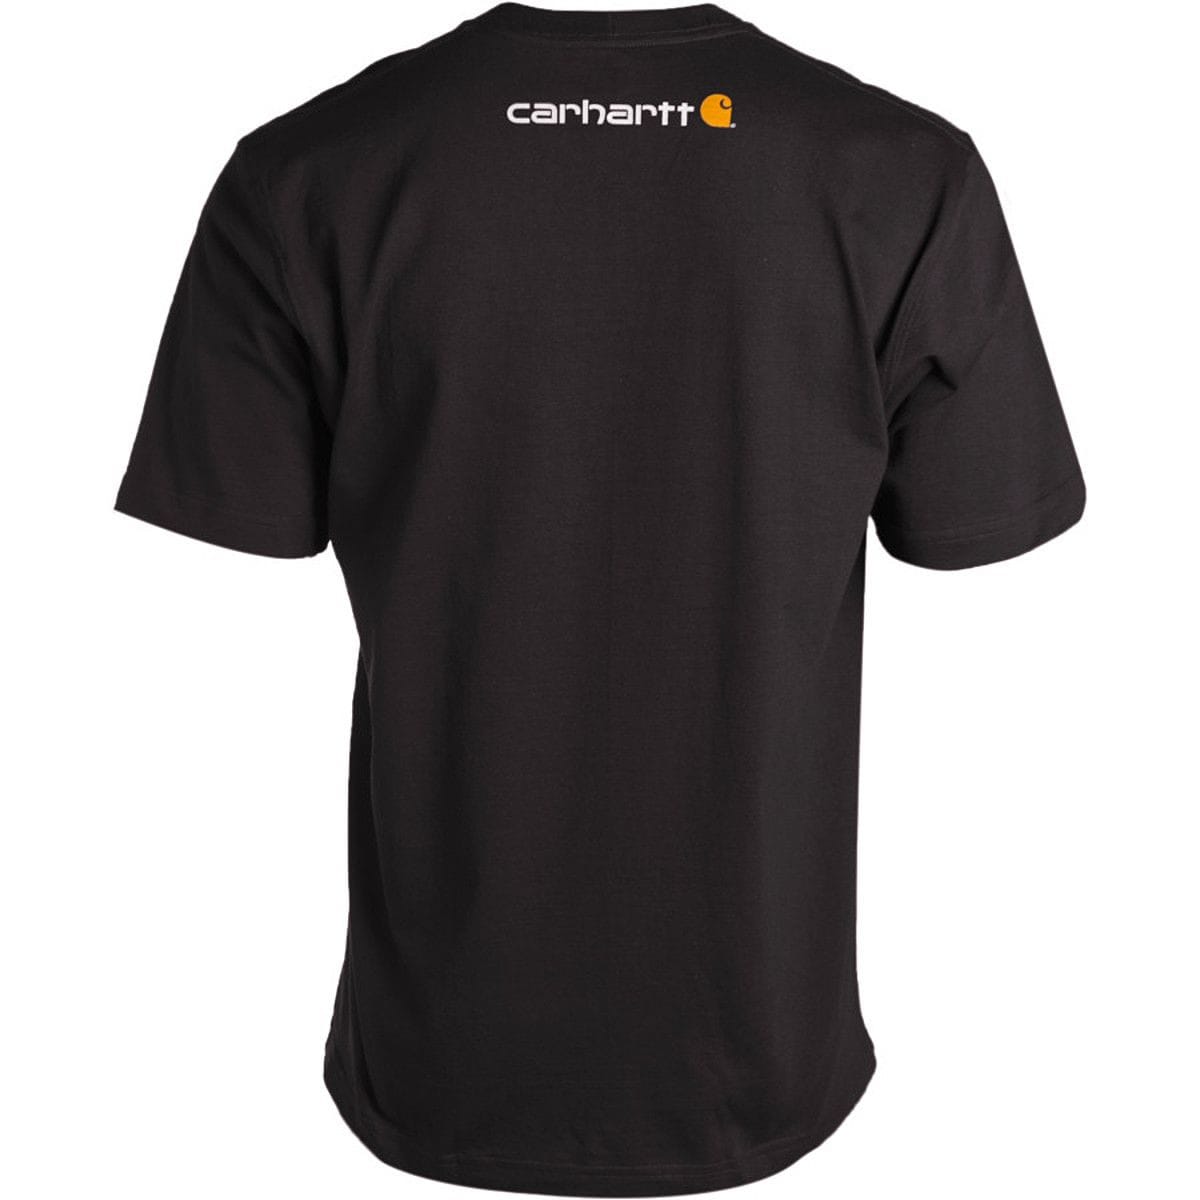 Carhartt Signature Logo T-Shirt - Men's | Backcountry.com